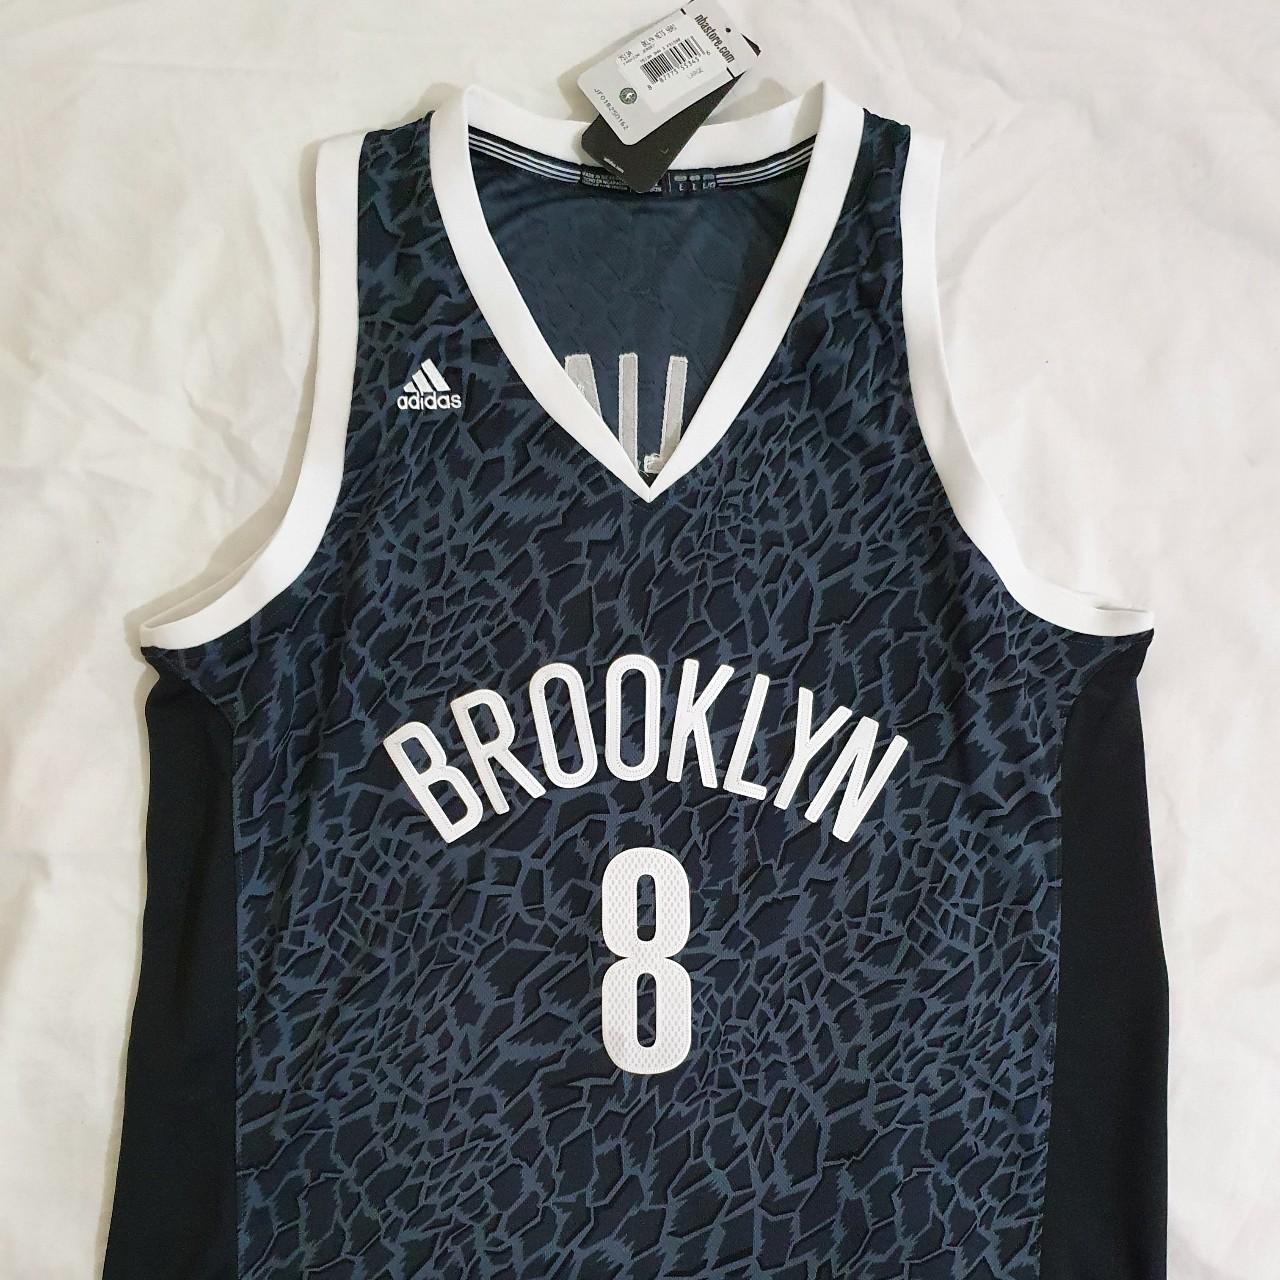 Brooklyn Nets NBA *Williams* Adidas Shirt L